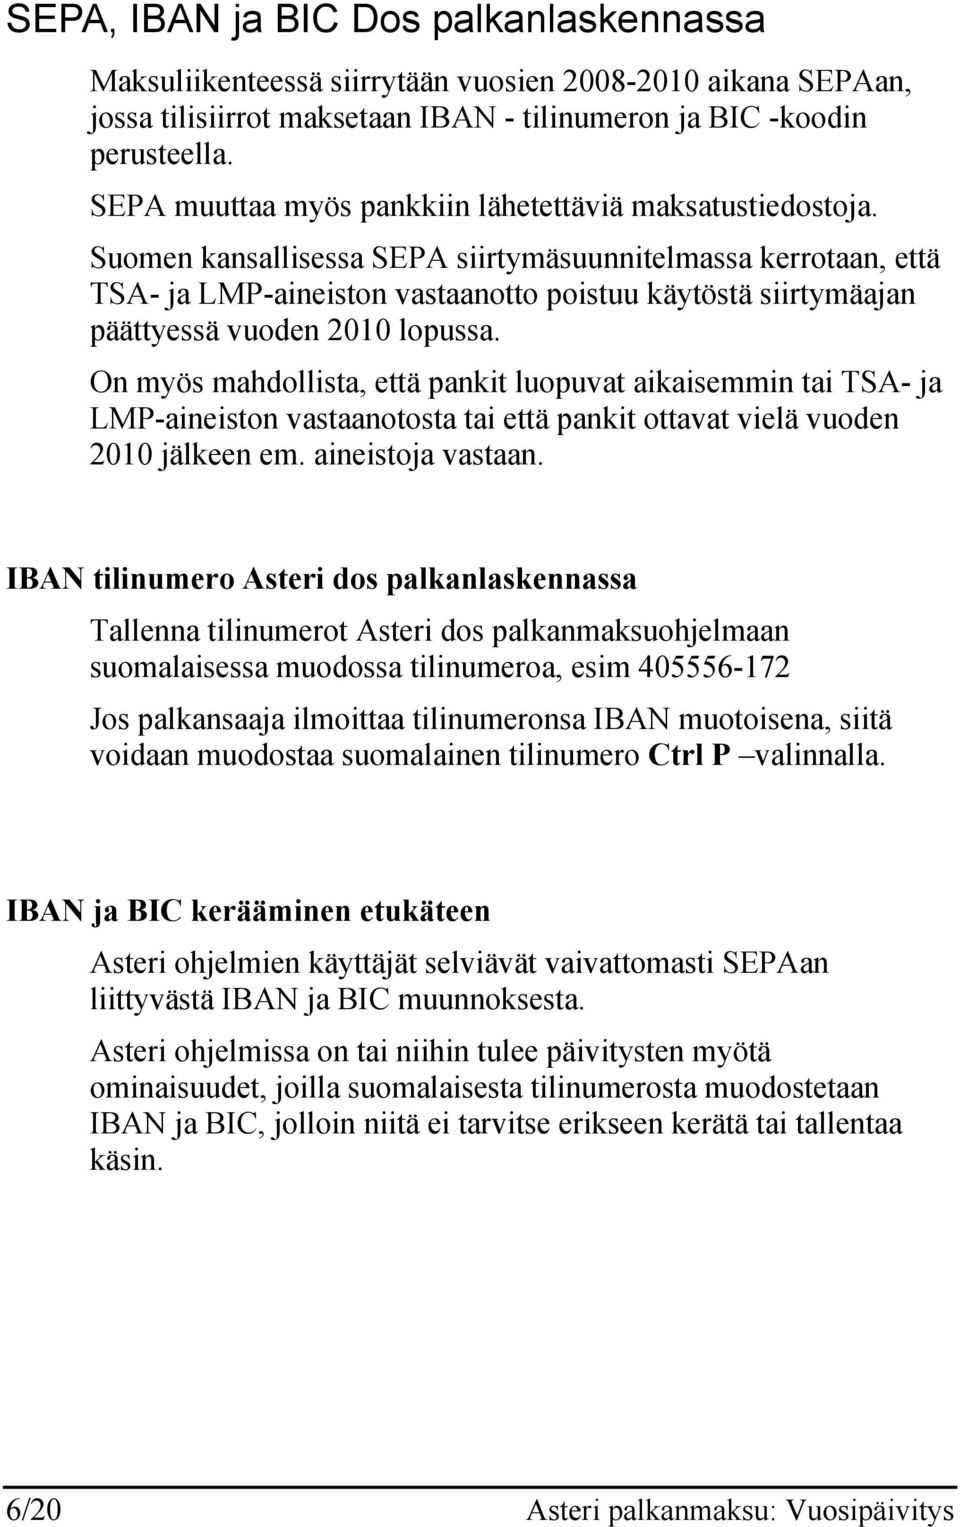 Suomen kansallisessa SEPA siirtymäsuunnitelmassa kerrotaan, että TSA- ja LMP-aineiston vastaanotto poistuu käytöstä siirtymäajan päättyessä vuoden 2010 lopussa.